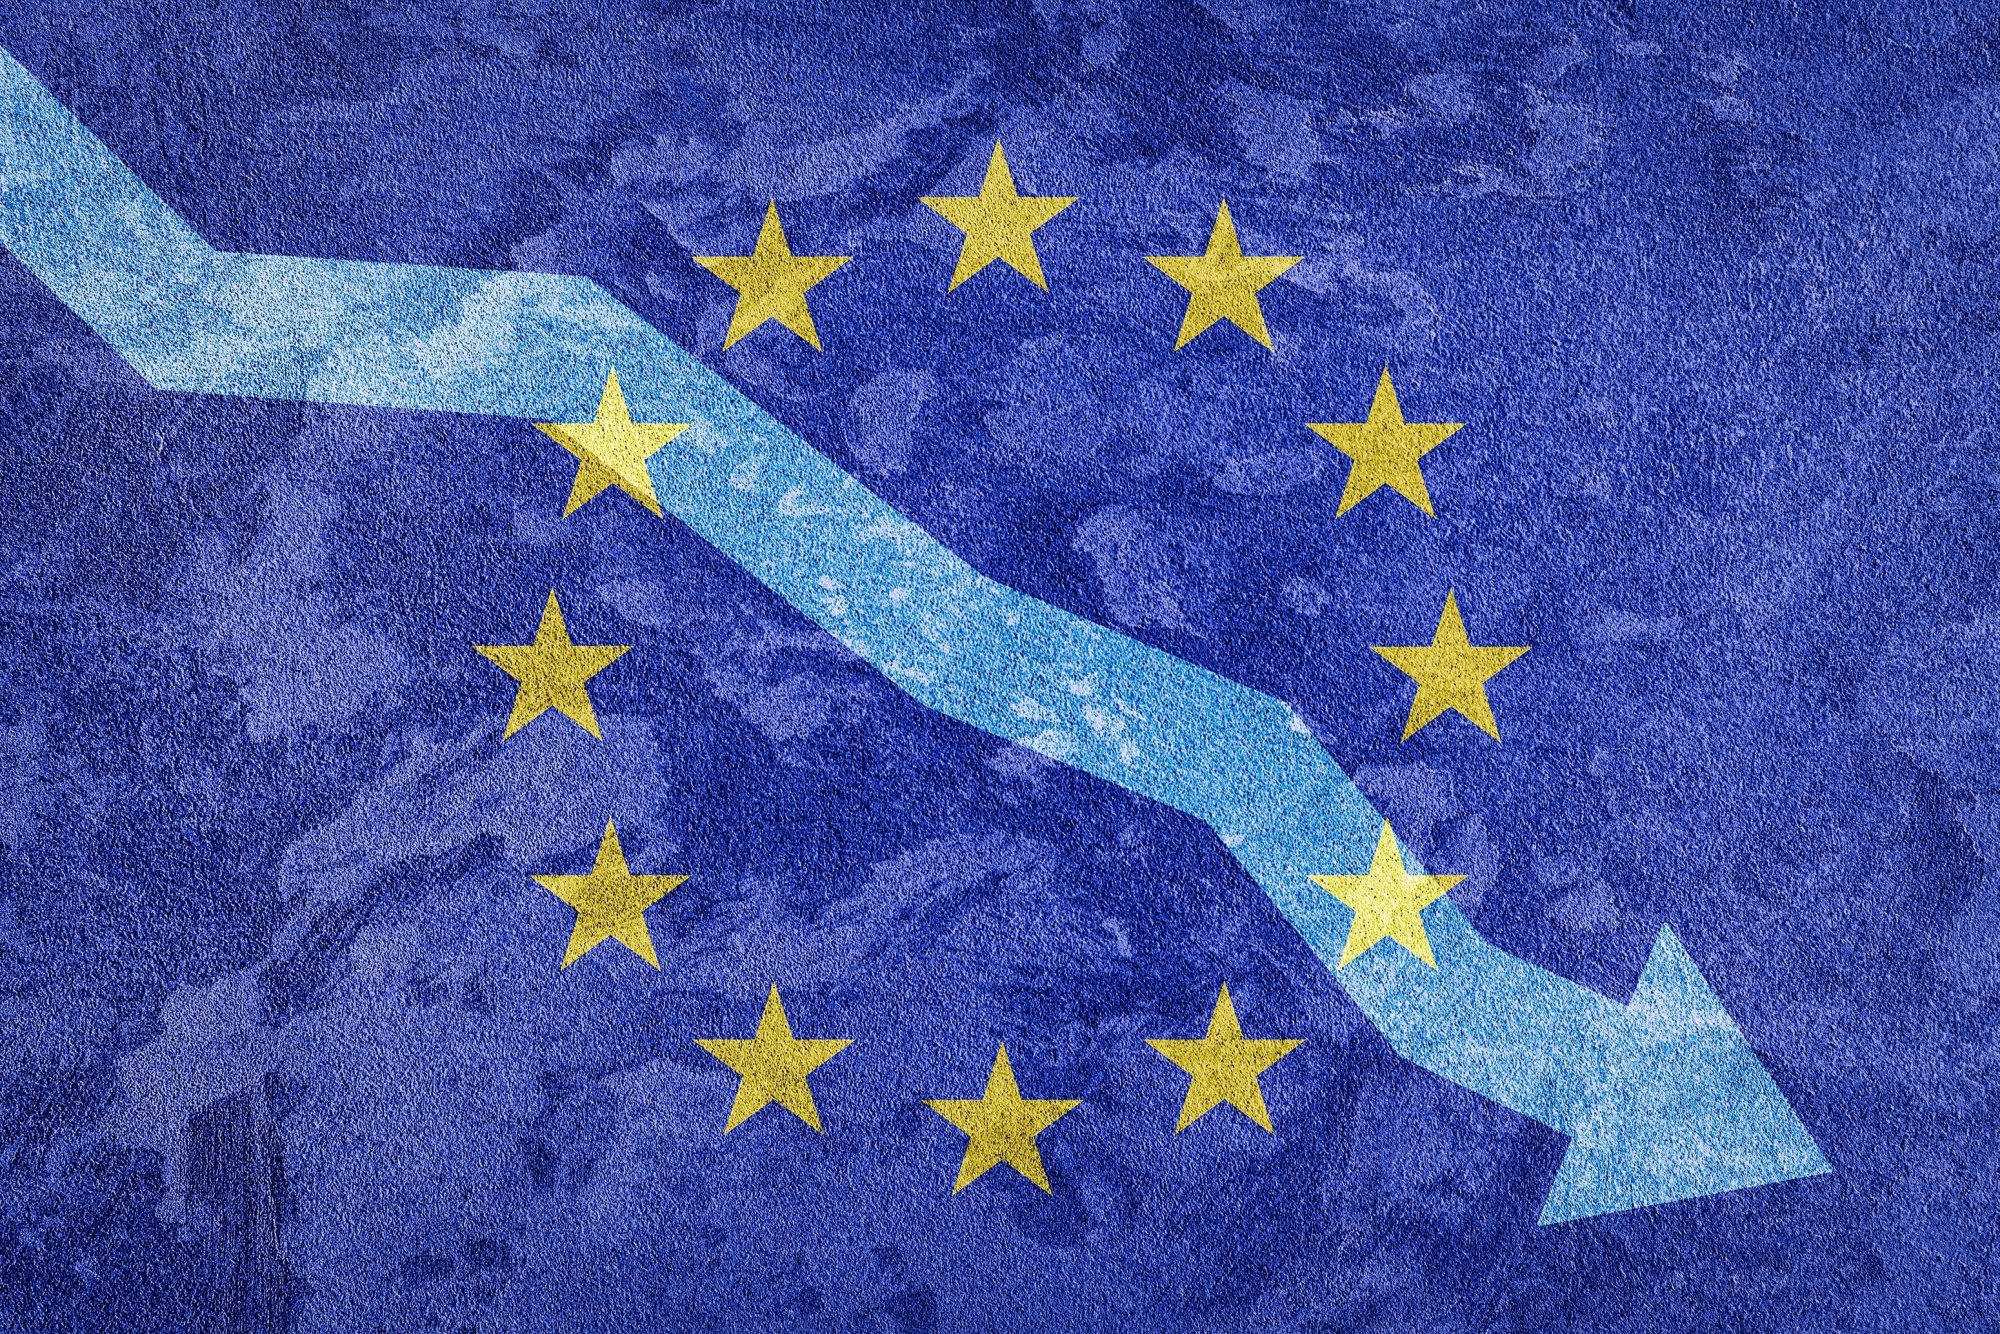 Οι ευρωεκλογές, η άνοδος της Ακροδεξιάς και τα καταρρακωμένα δημοκρατικά ιδεώδη της Ευρώπης